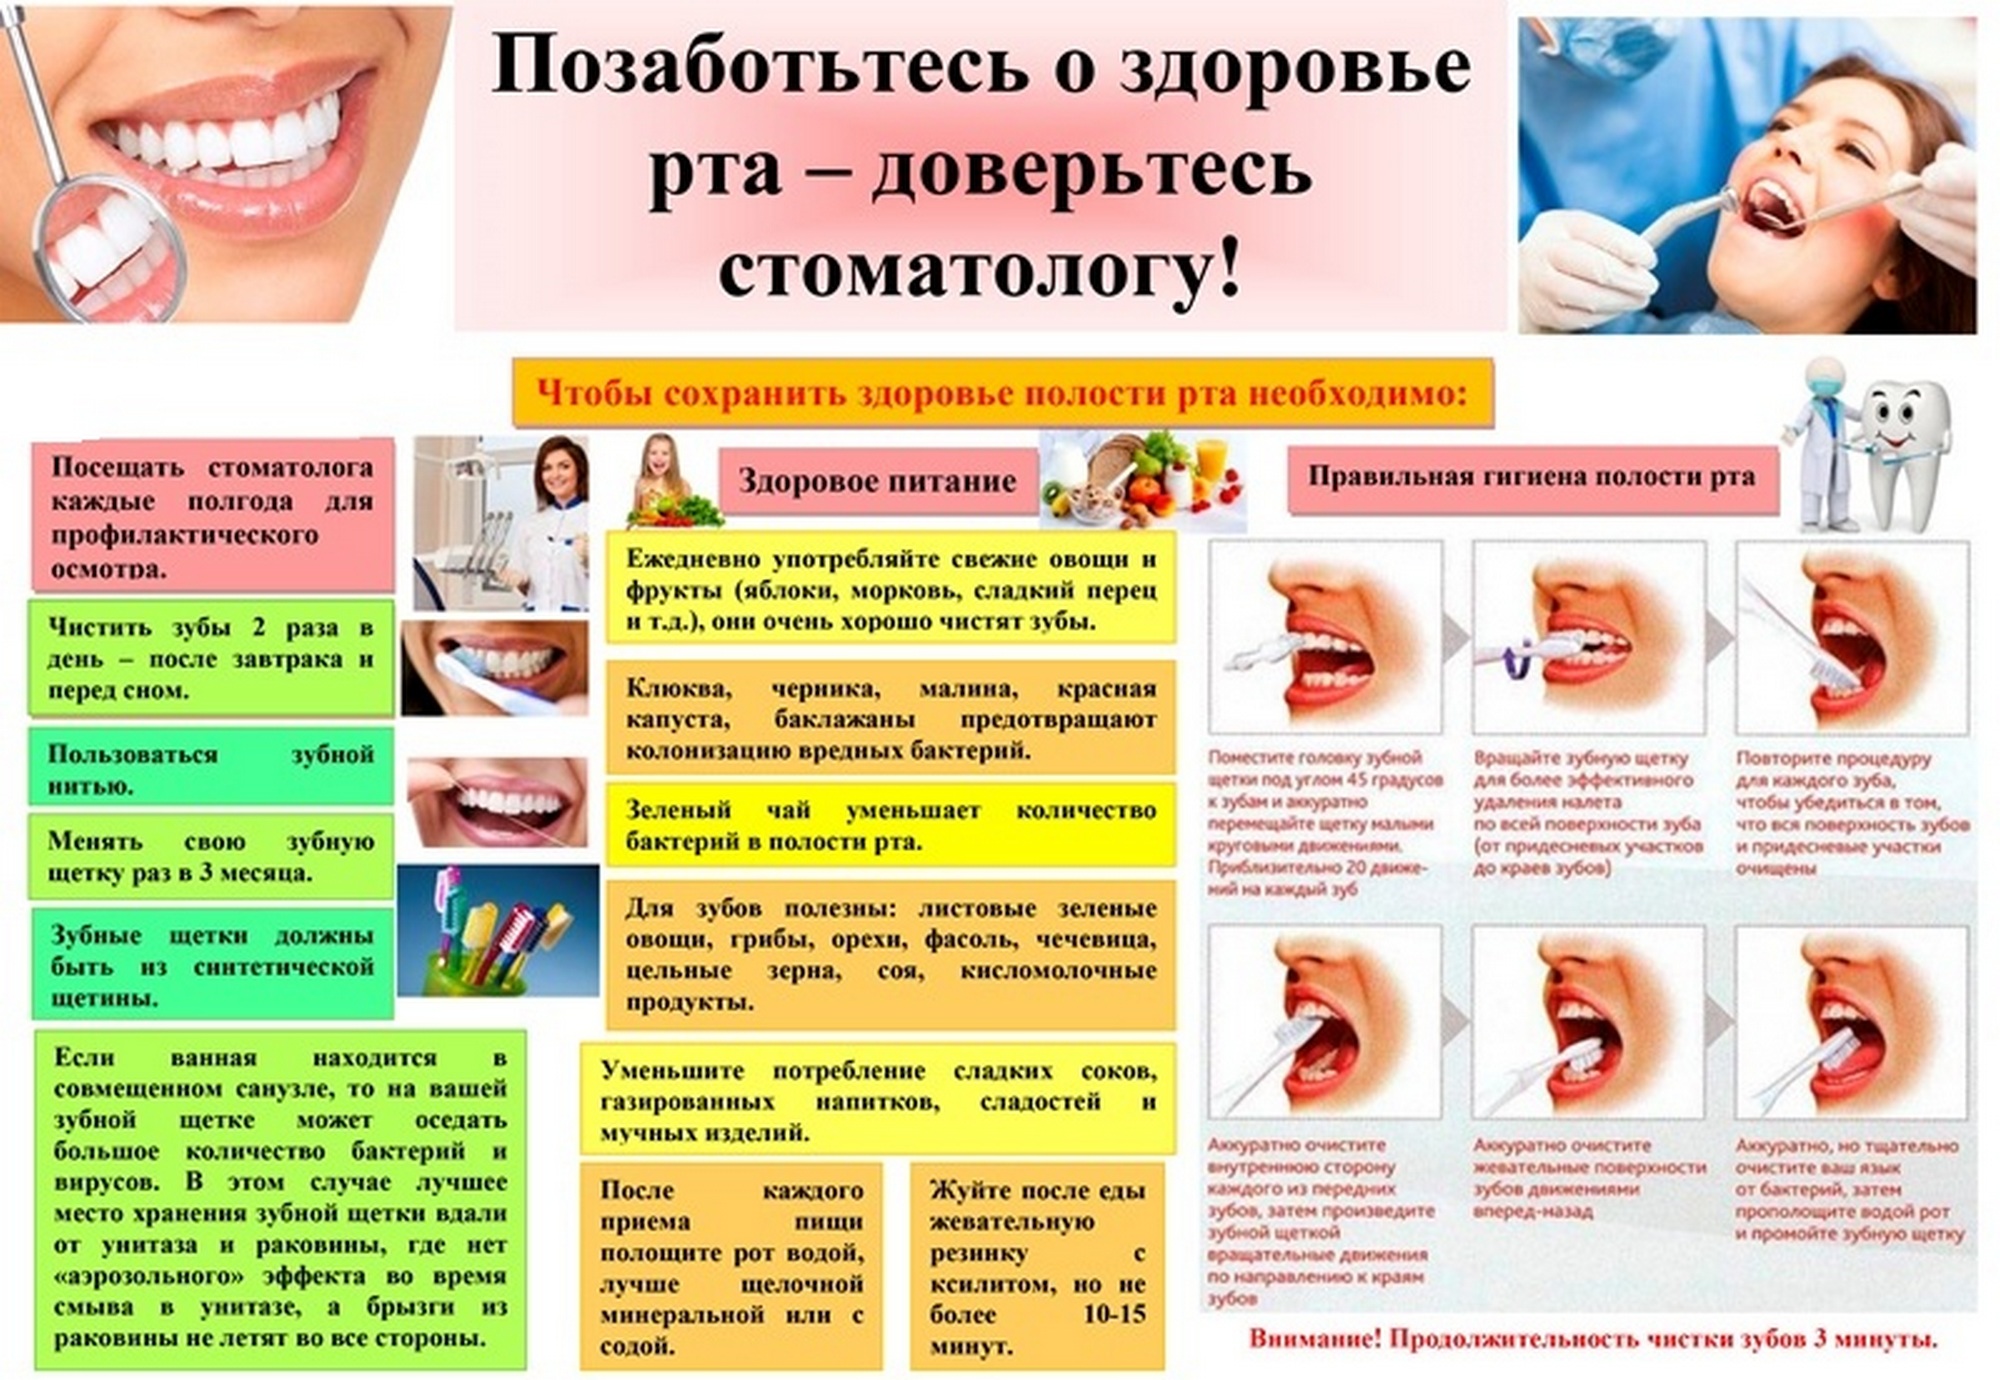 Листовка РайЦГЭ  "Единый день здоровья полости рта"    